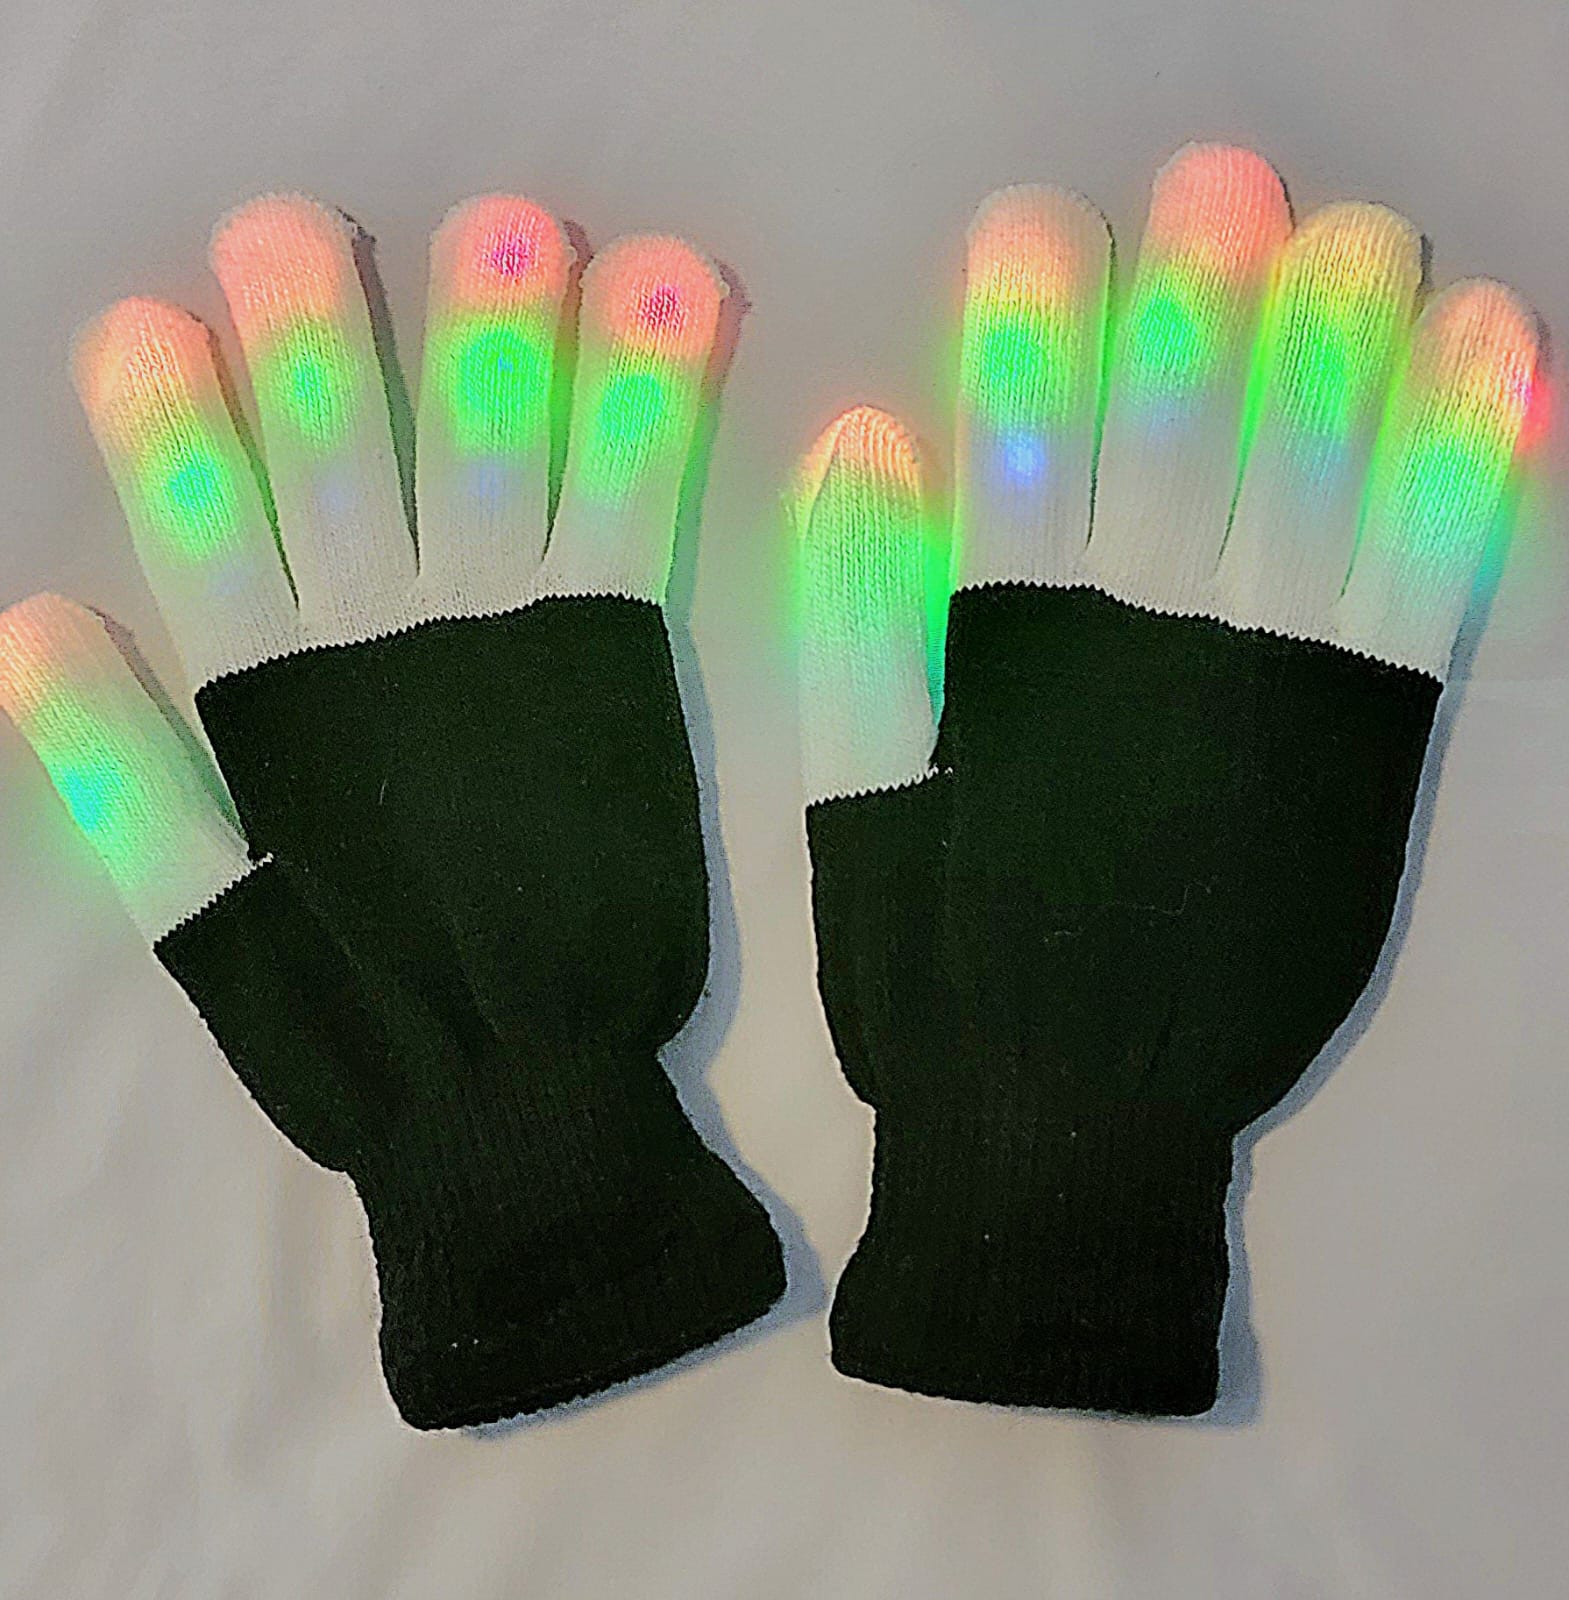 Led gloves